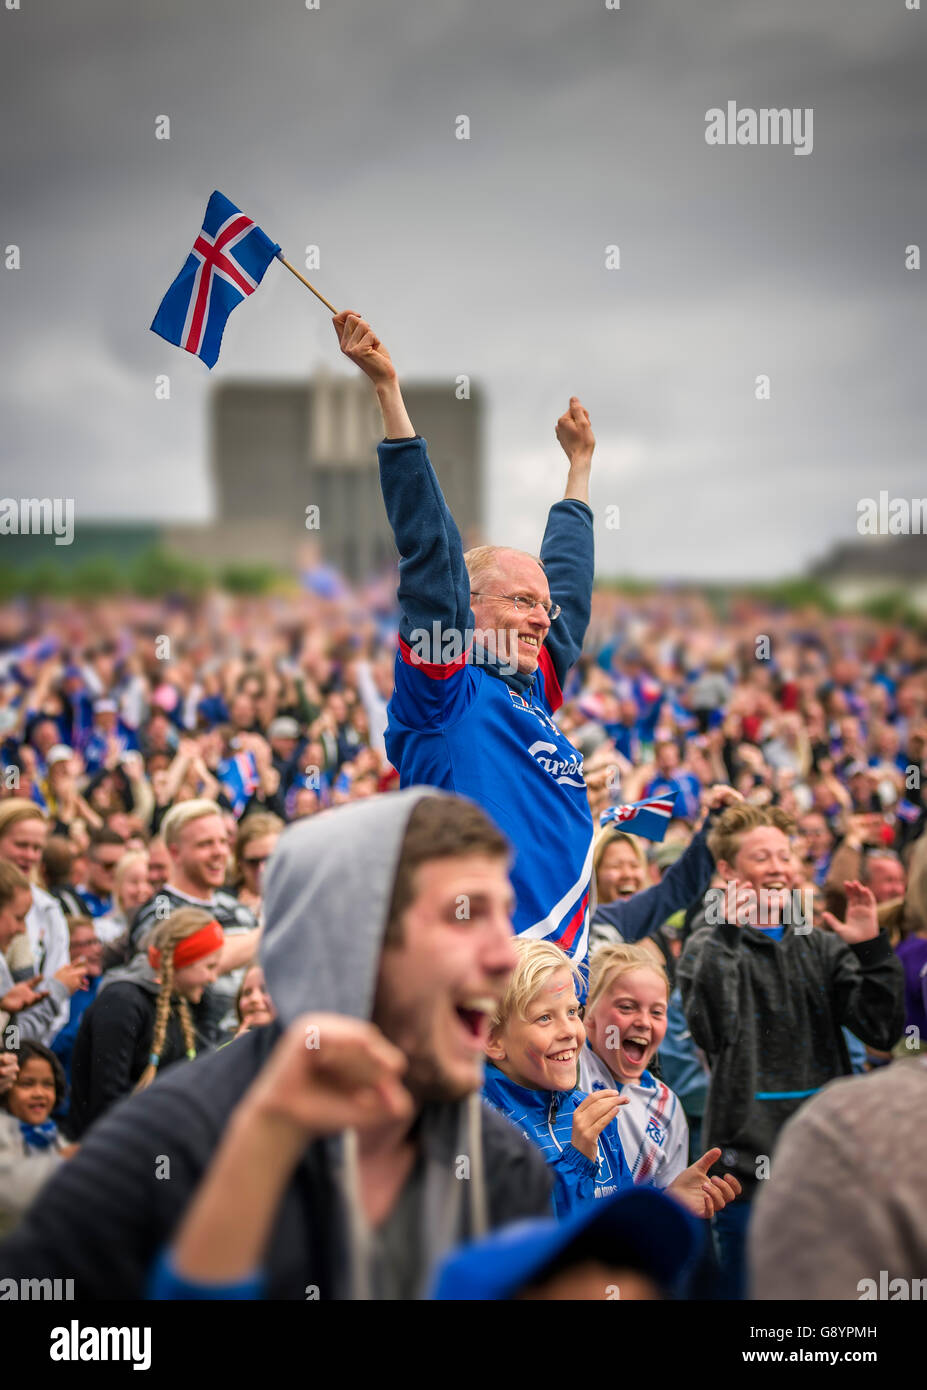 La folla nel centro di Reykjavik la visione di Islanda vs Inghilterra in UEFA EURO 2016 torneo di calcio, Reykjavik, Islanda. L'Islanda ha vinto 2-1. Giugno 27, 2016 Foto Stock